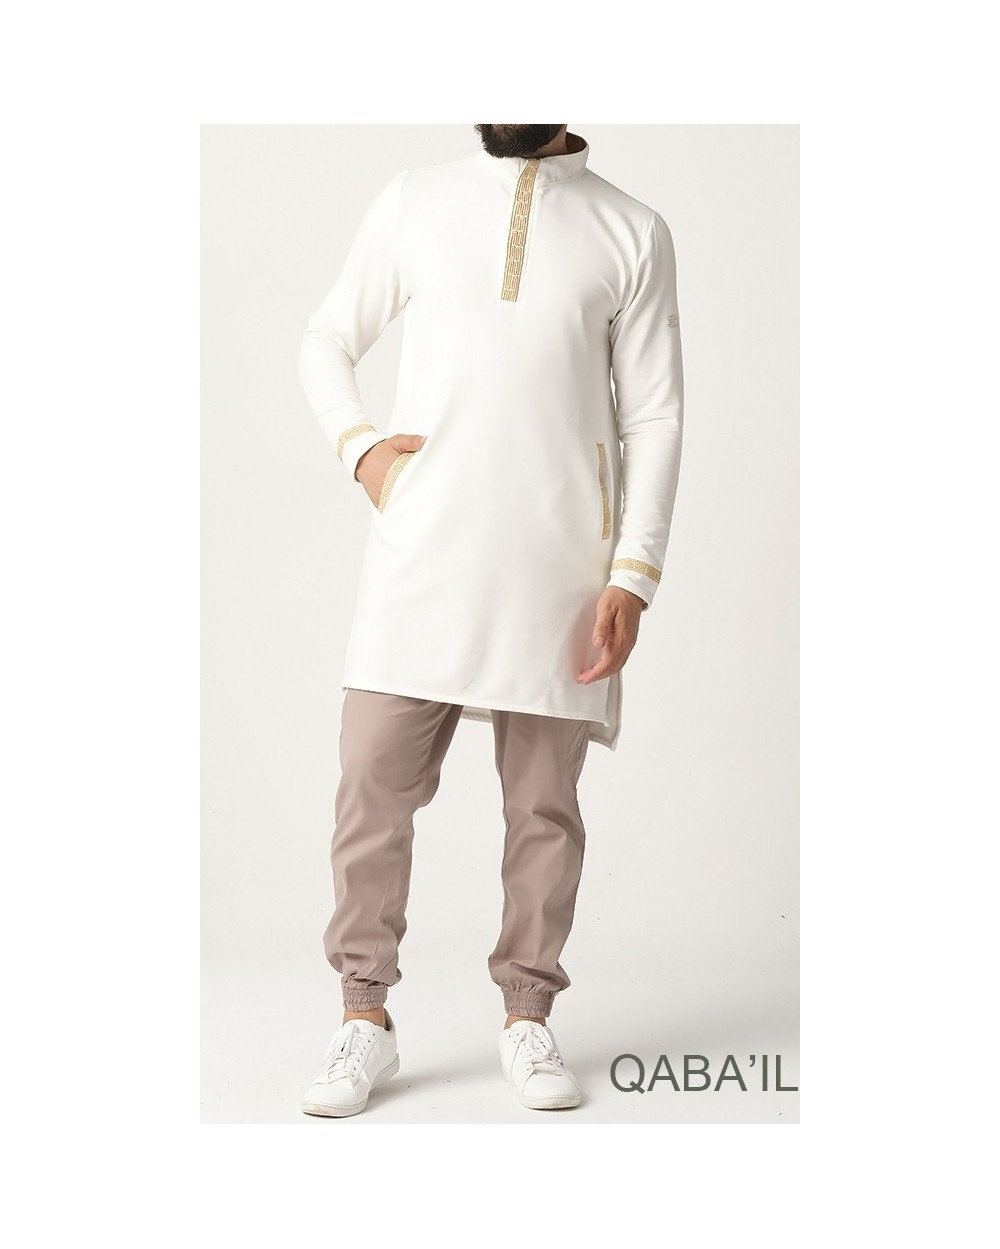 Qabail  Marque de vêtements conçu pour les musulmans